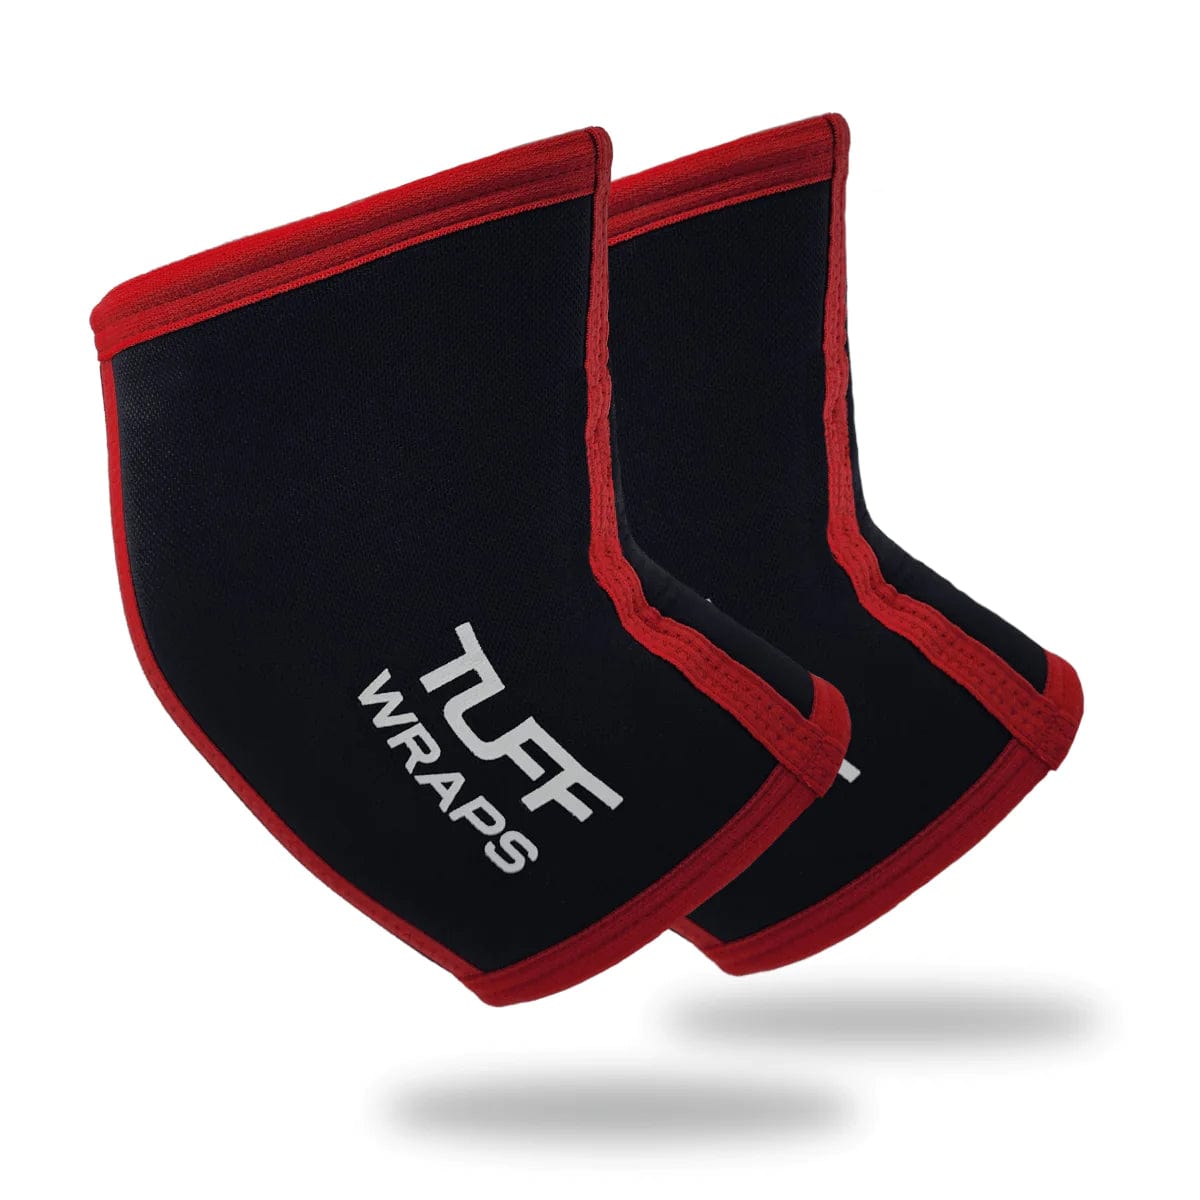 TUFF Power Series 7mm Elbow Sleeves (Black/Red) Elbow Sleeves